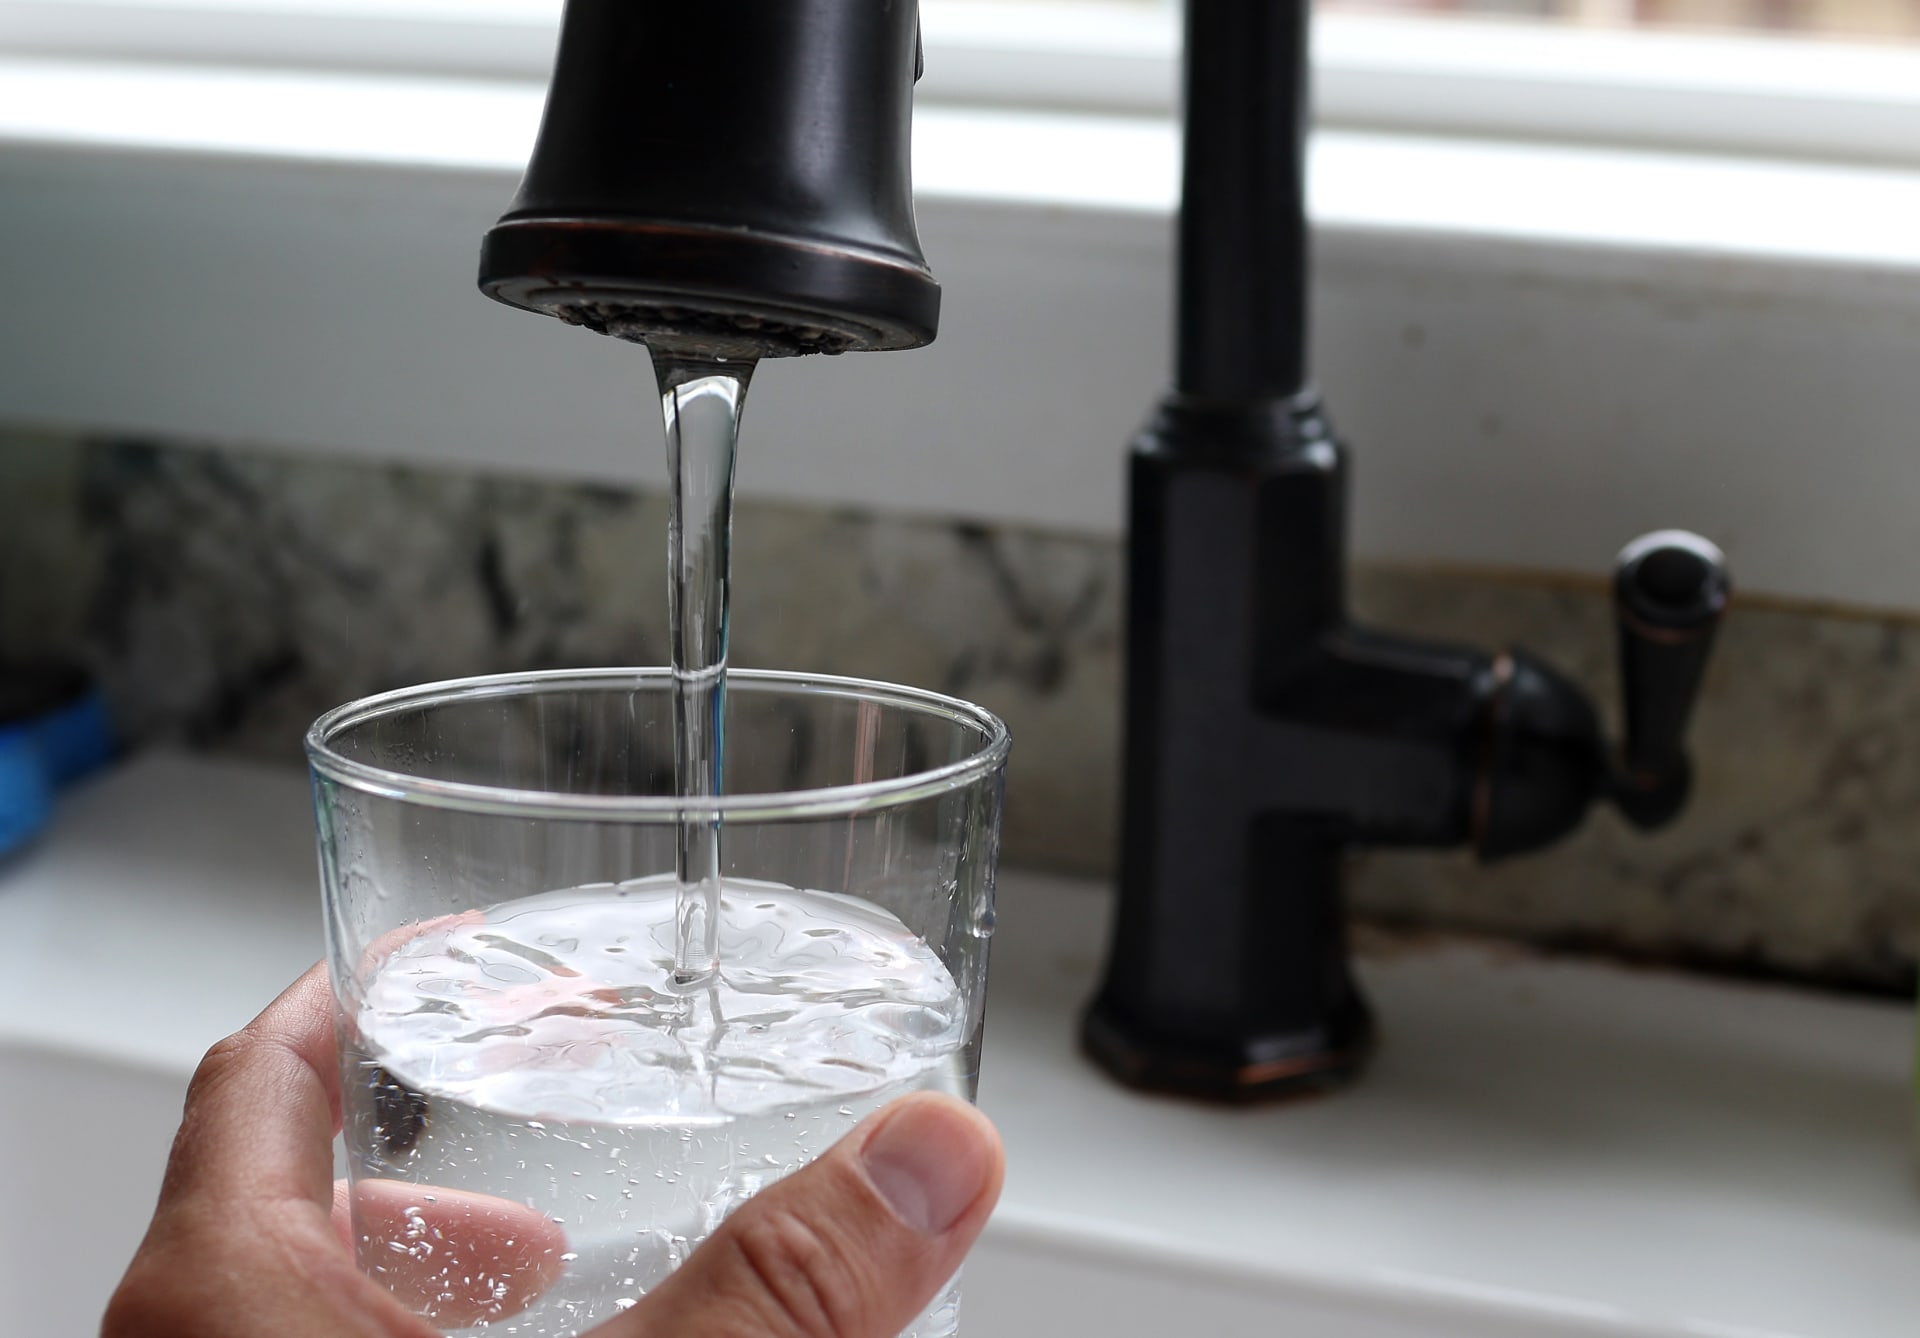 الحكومة المصرية تقدم لمواطنيها 10 نصائح لترشيد استهلاك المياه في المنازل